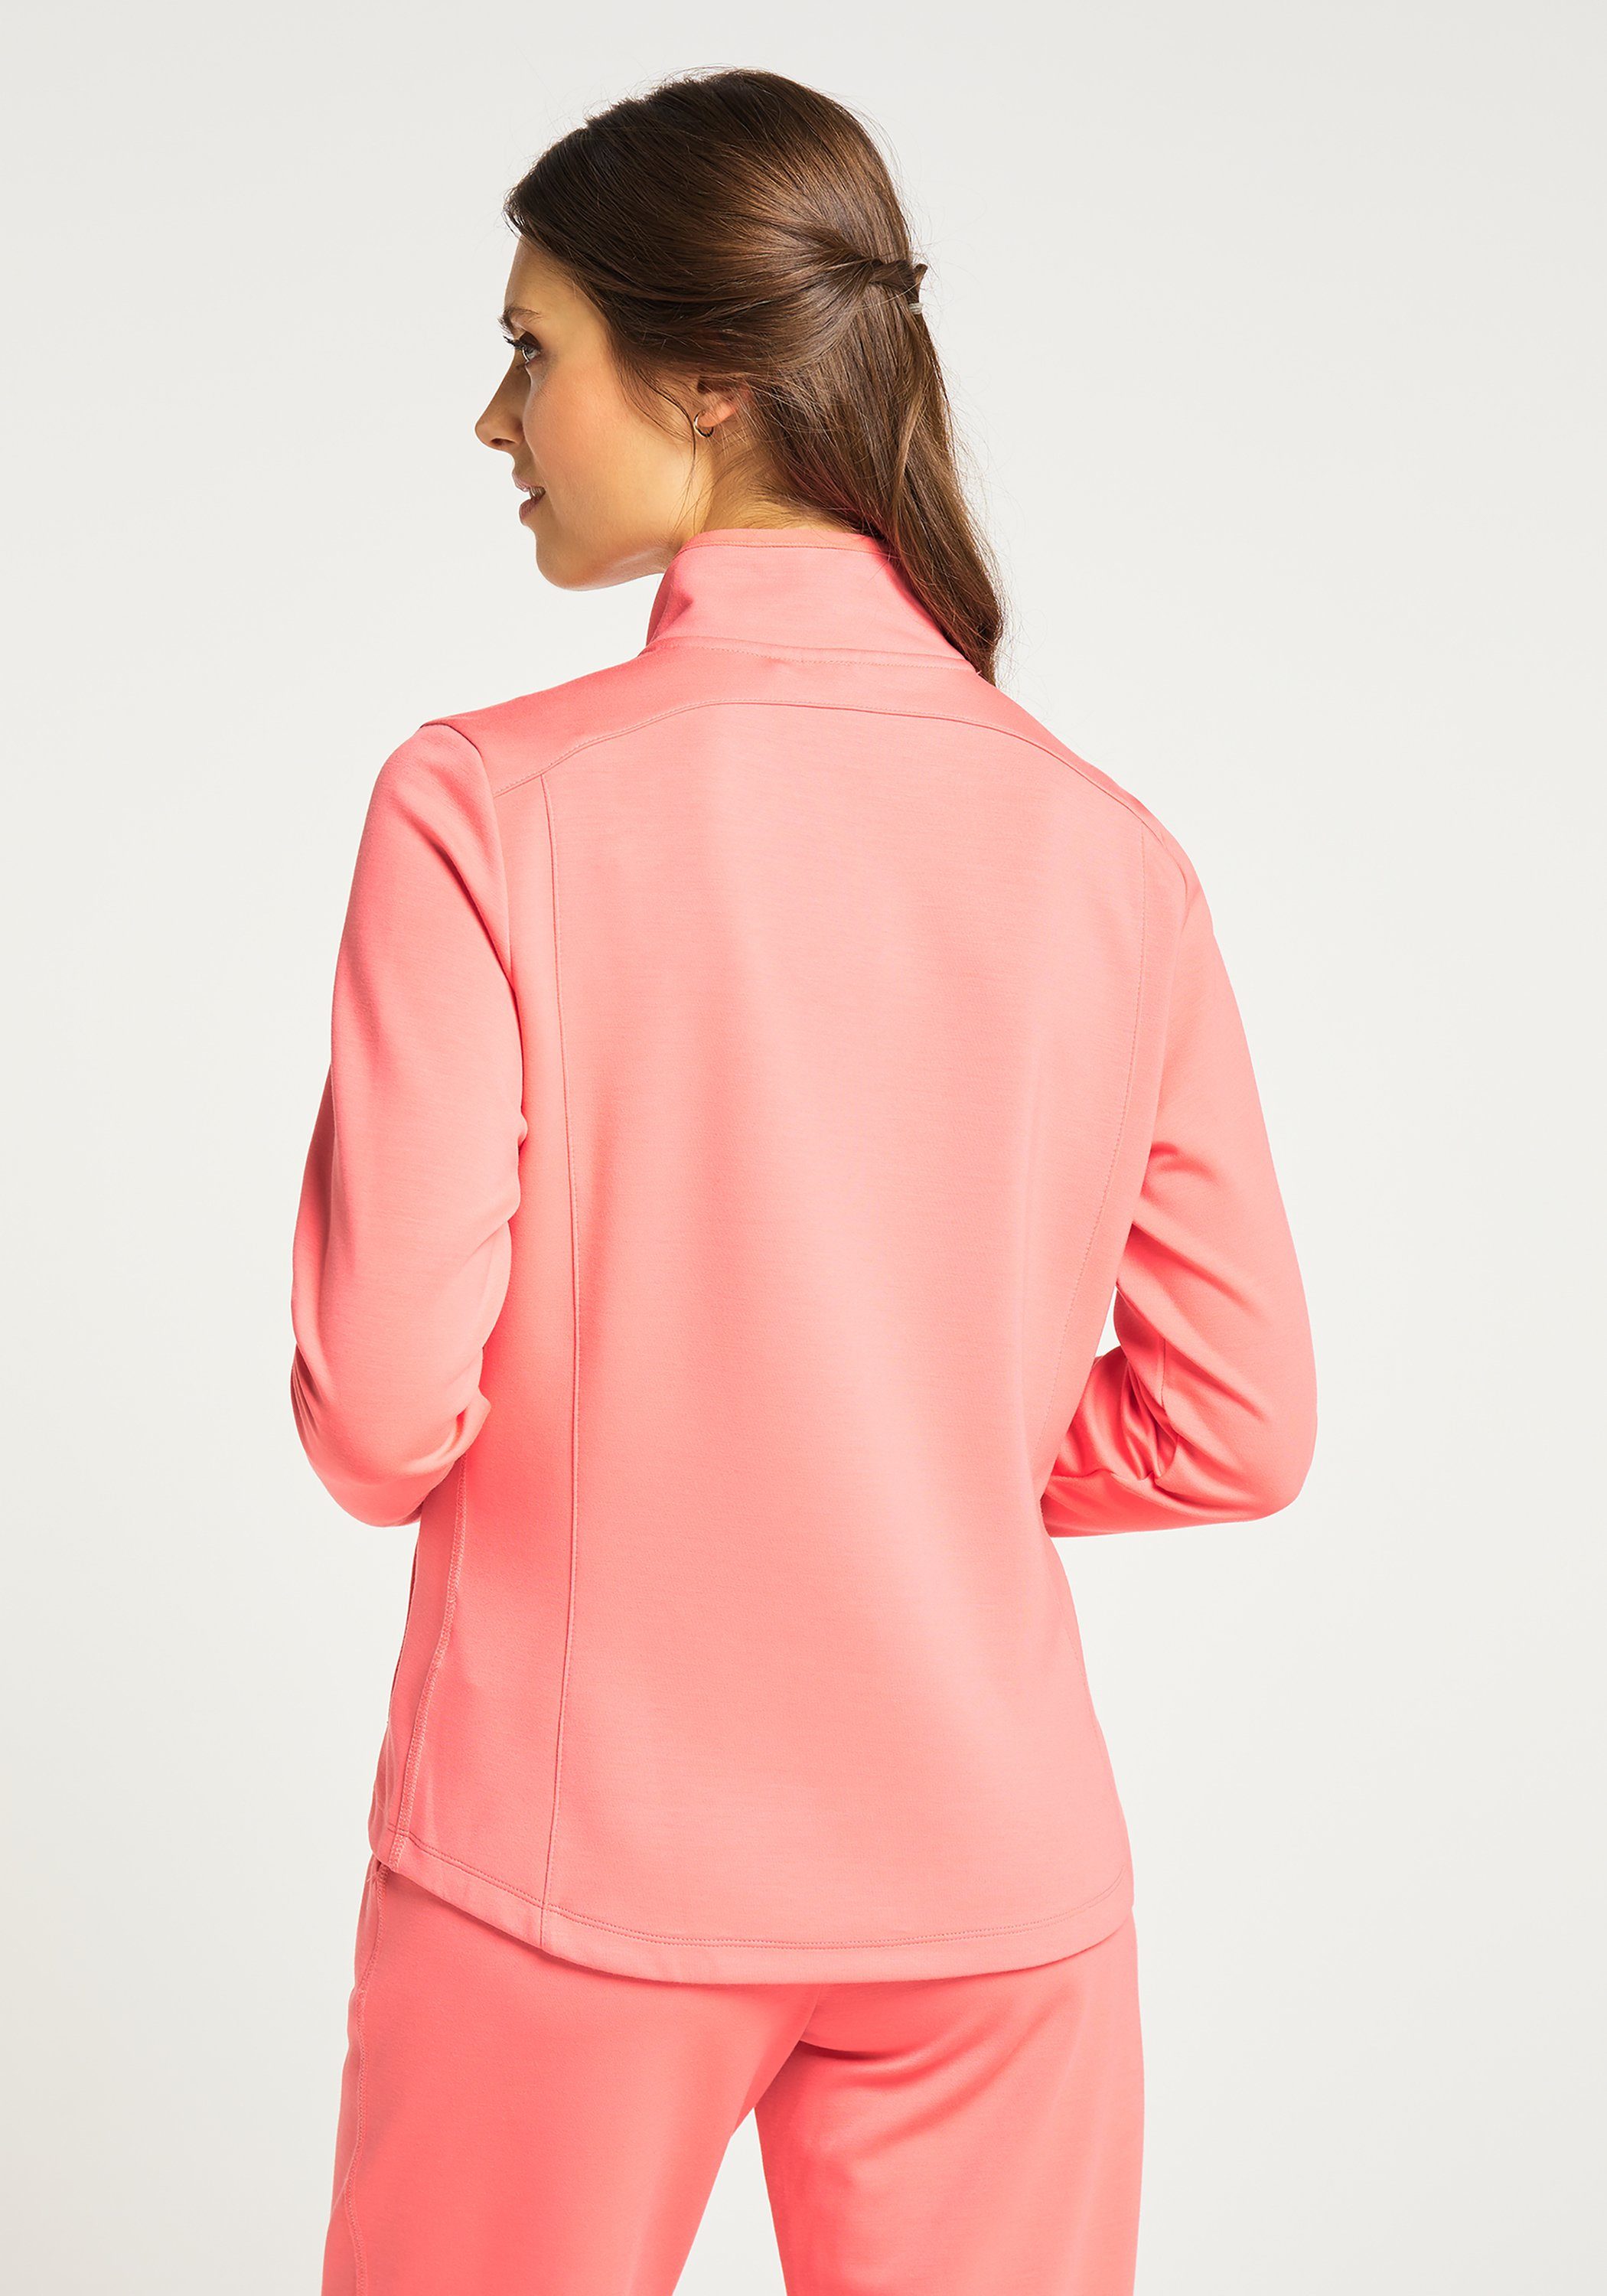 Joy Sportswear Jacke Trainingsjacke coral pink MALA